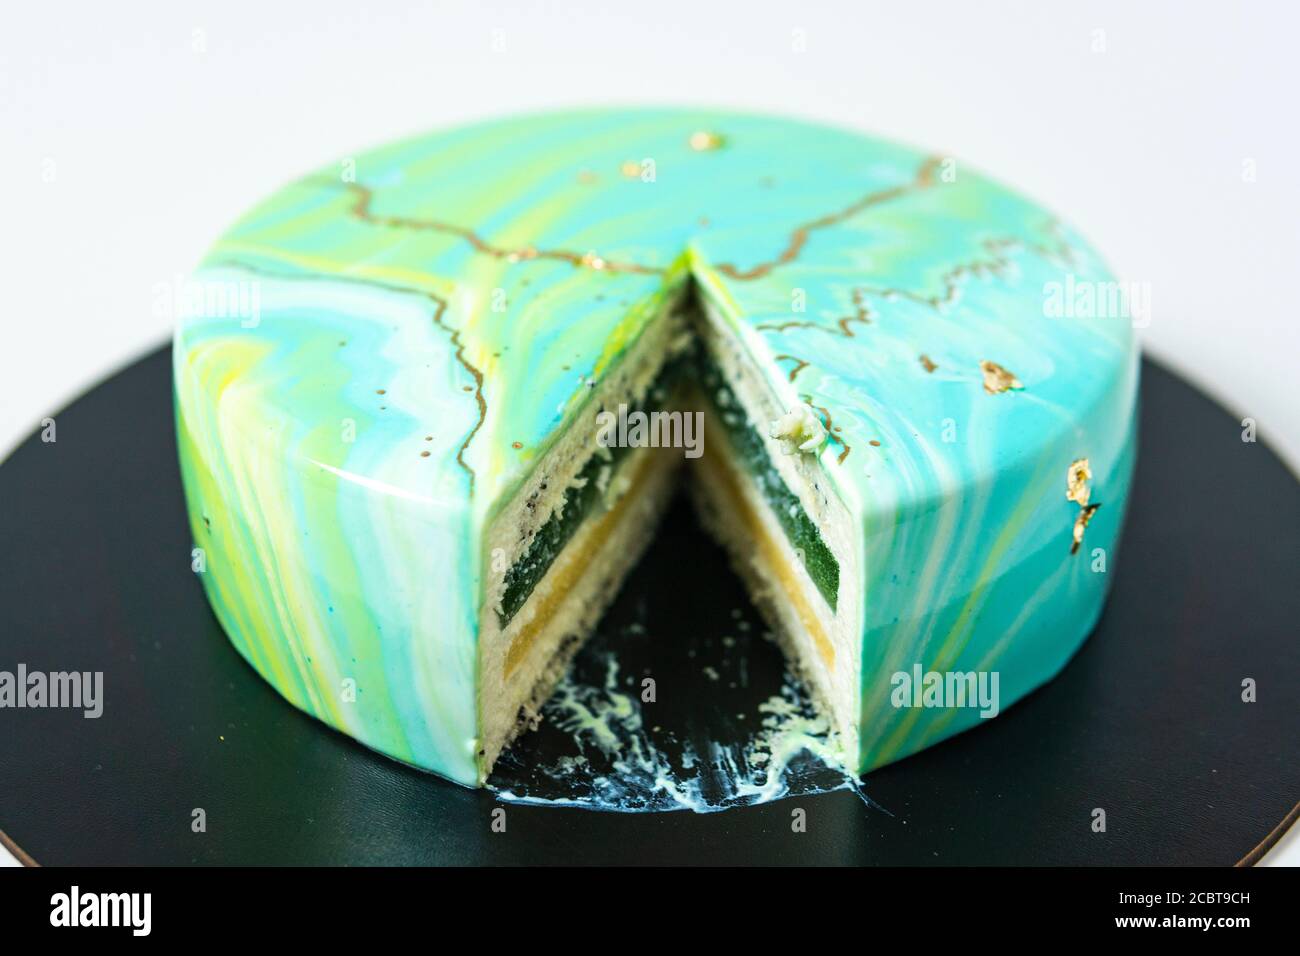 Nahaufnahme von Mousse Kuchen bedeckt blauen und grünen Spiegel Glasur.  Französisches Dessert. Gefrorene Spiegel Sahnehäubchen auf dem Kuchen.  Backen und Süßwaren Konzept. Weiß Stockfotografie - Alamy